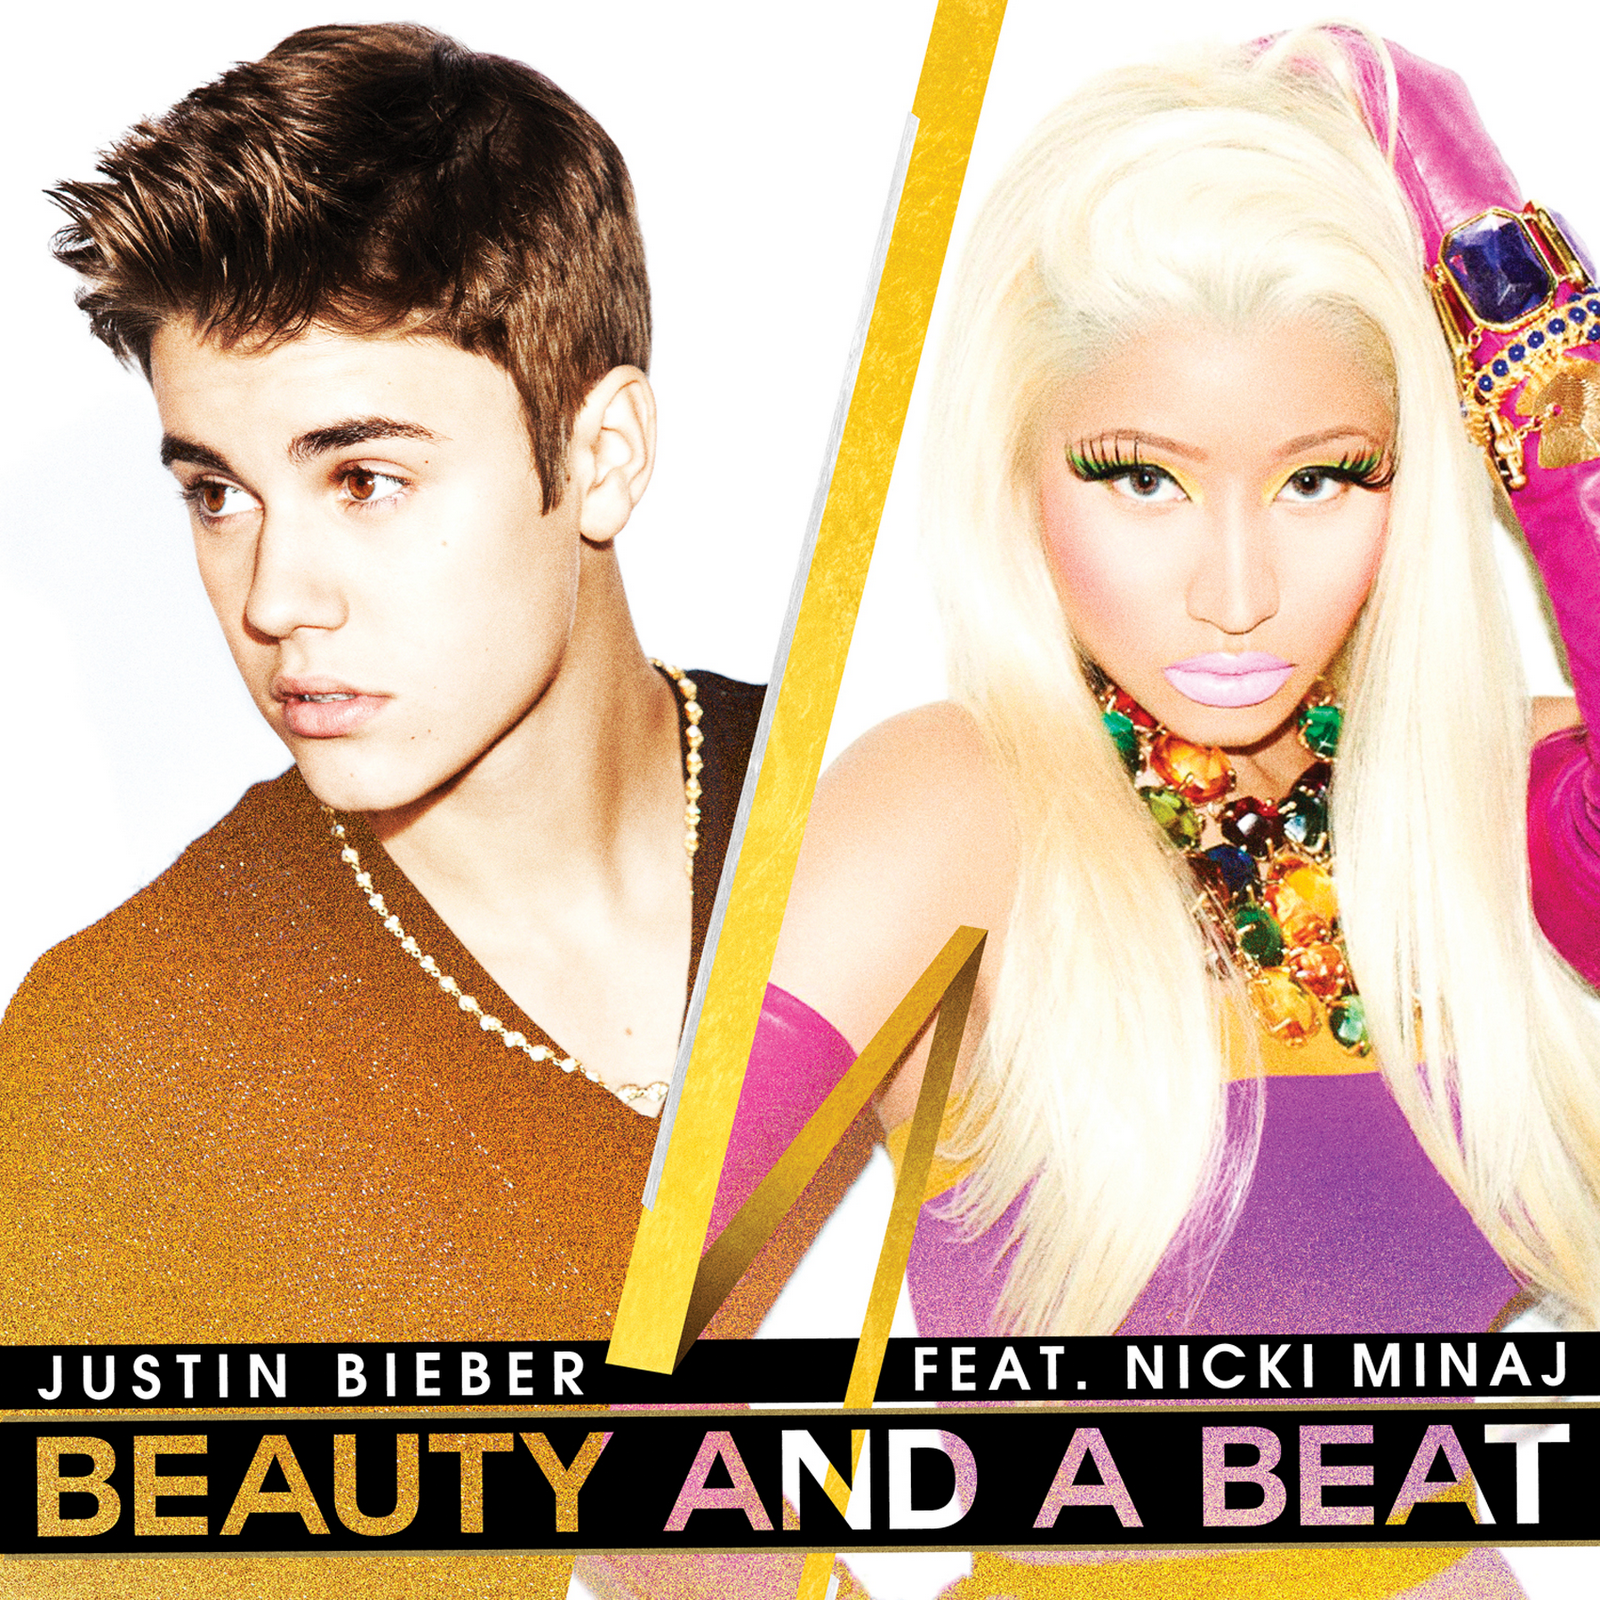 http://4.bp.blogspot.com/-57D8xqO1TVE/UHVqI1kYhzI/AAAAAAAAC80/Z4vjGTI1ipI/s1600/Justin-Bieber-Beauty-and-a-Beat-2012-1700x1700.png